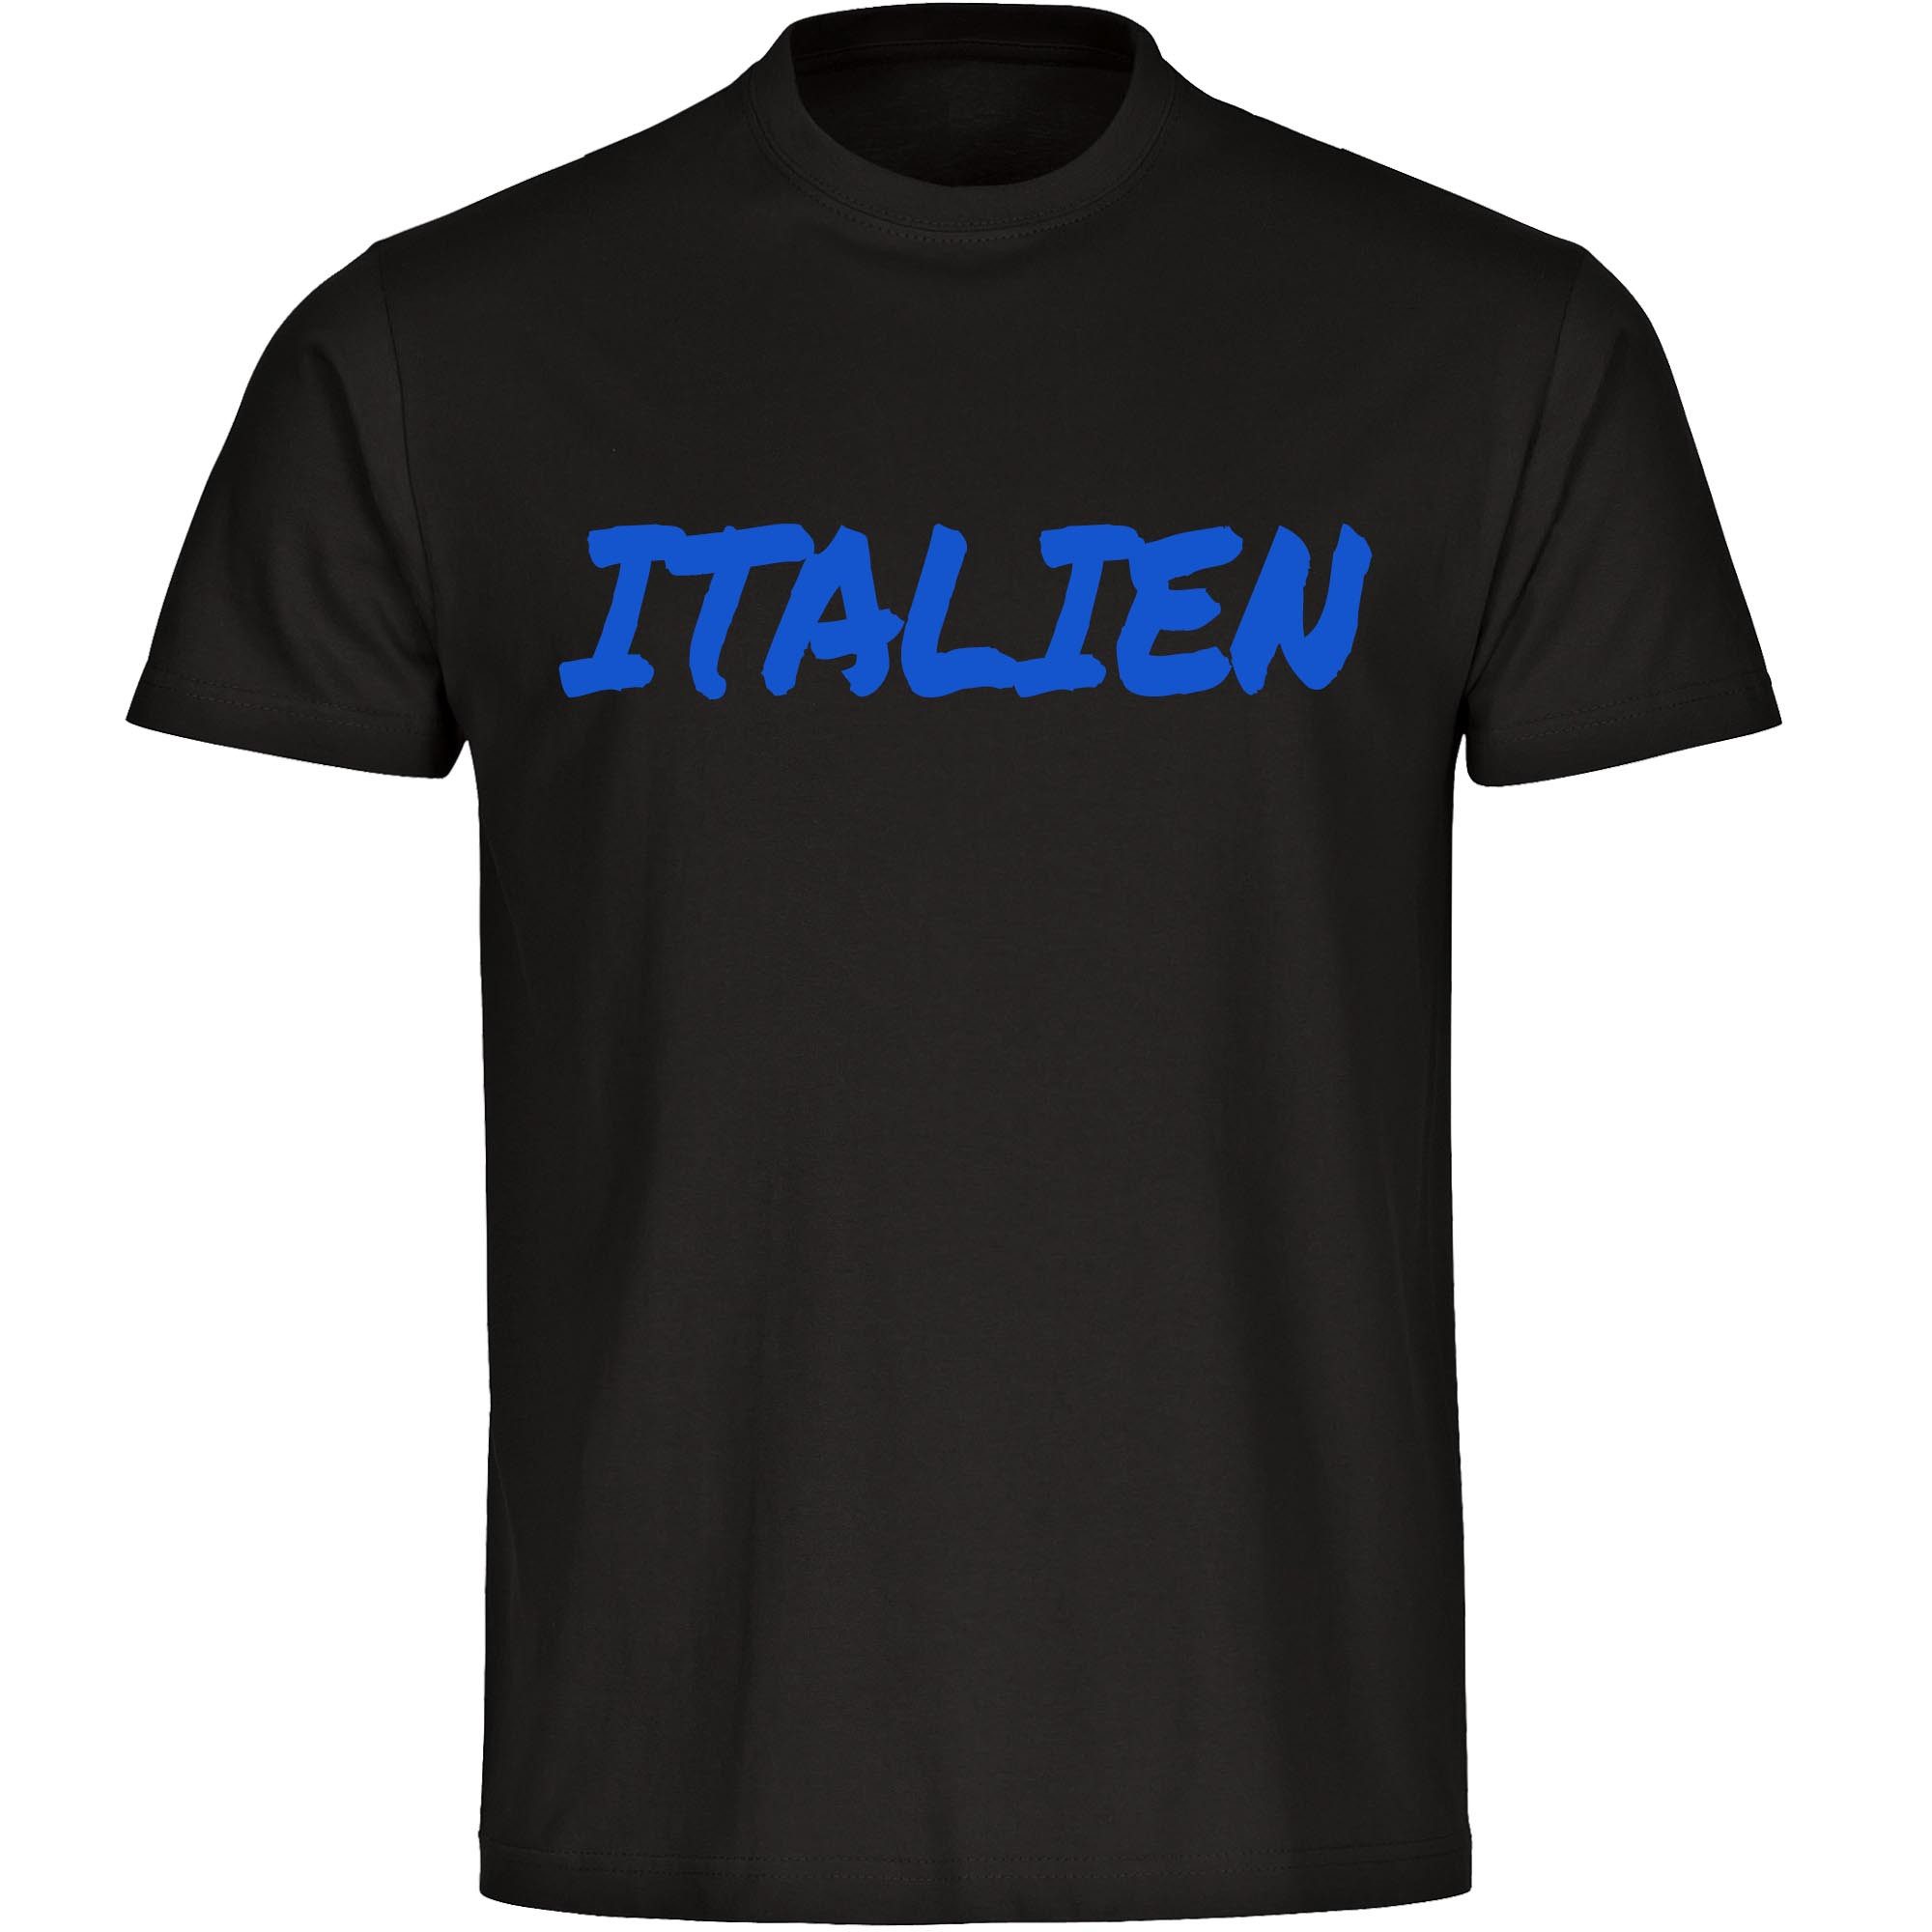 multifanshop T-Shirt Herren Italien - Textmarker - Männer